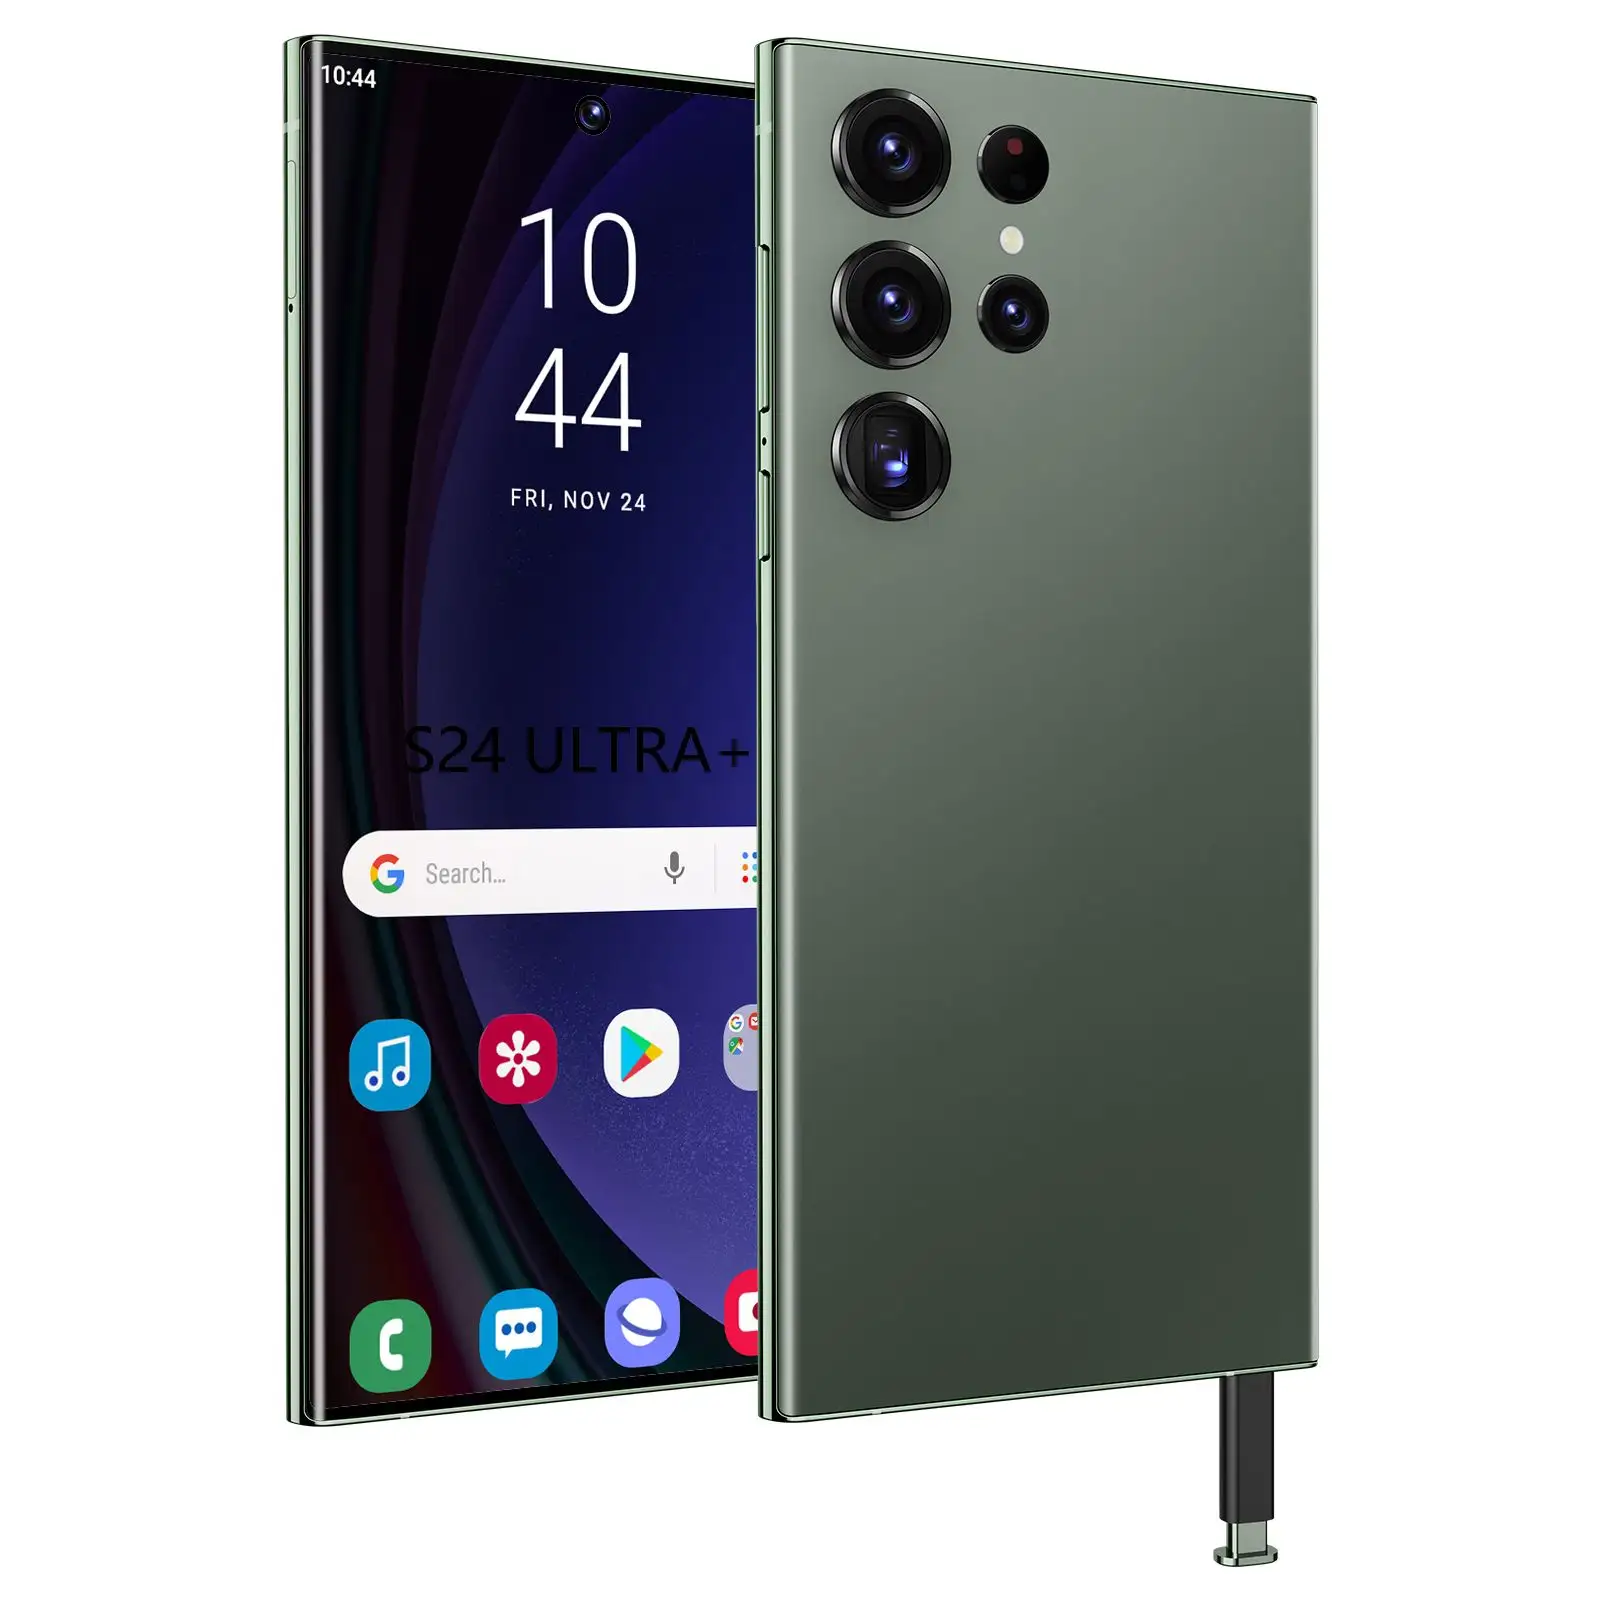 Hot Seller EU New Smart Phones: 15 Pro Max S24 Ultra